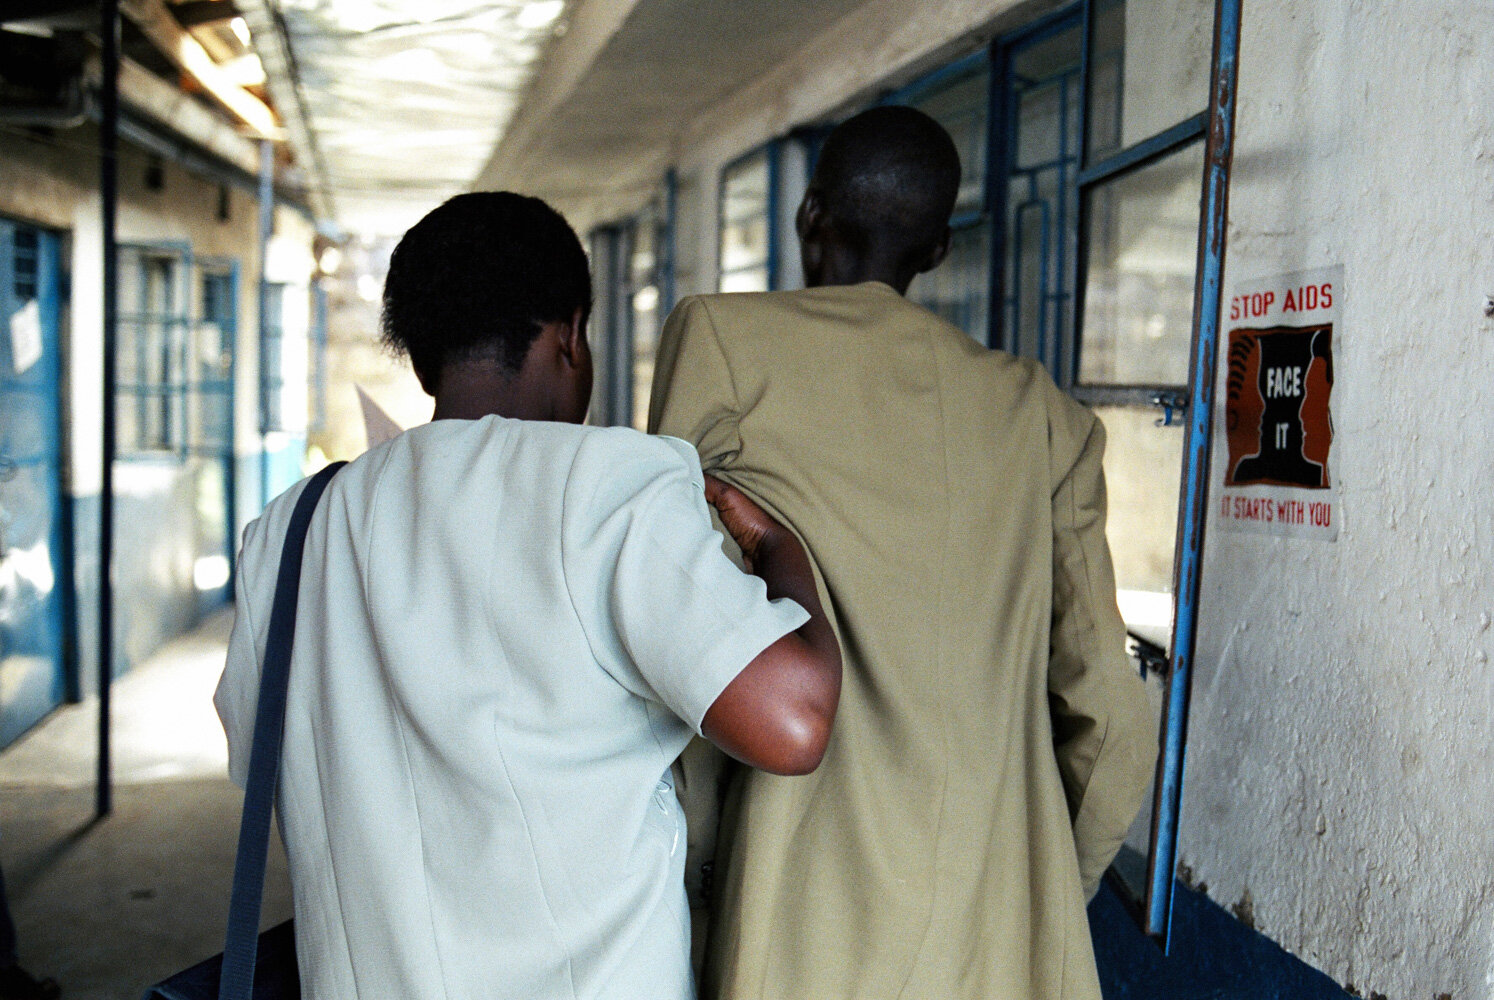  Un couple entre dans la clinique SIDA du bidonville de Matharé pour se faire dépister. La femme soutient son mari, trop faible pour marcher seul. Avec Médecins Sans Frontières, dans la lutte pour l'accès aux médicaments essentiels. Nairobi, Kenya. M